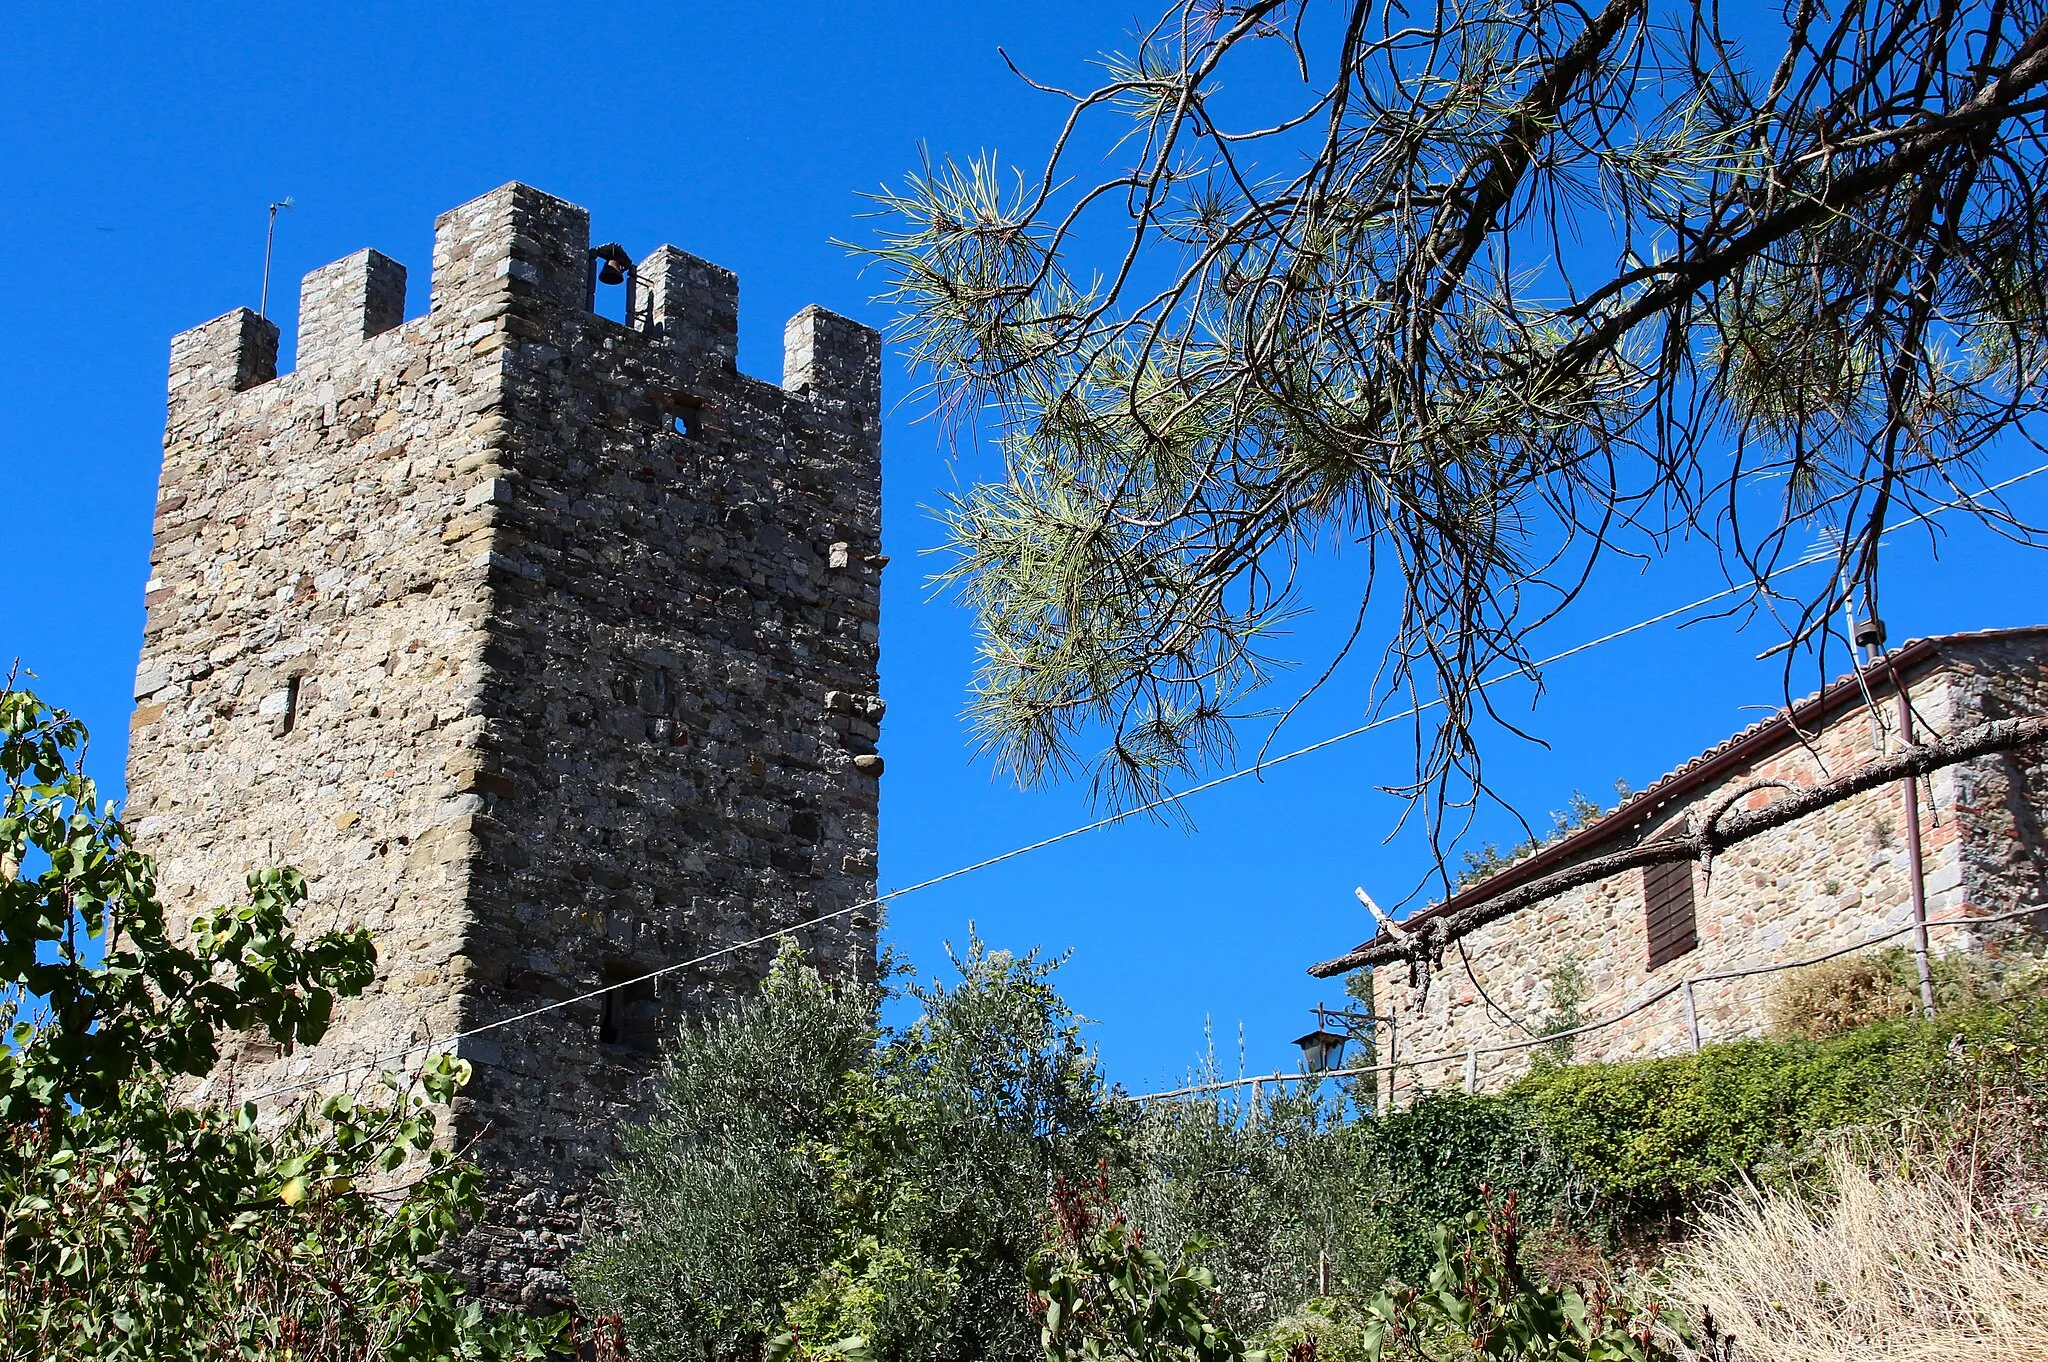 Photo showing: Castle Castello di Mongiovino, Mongiovino Vecchio, near Tavernelle, hamlet of Panicale, Umbria, Italy